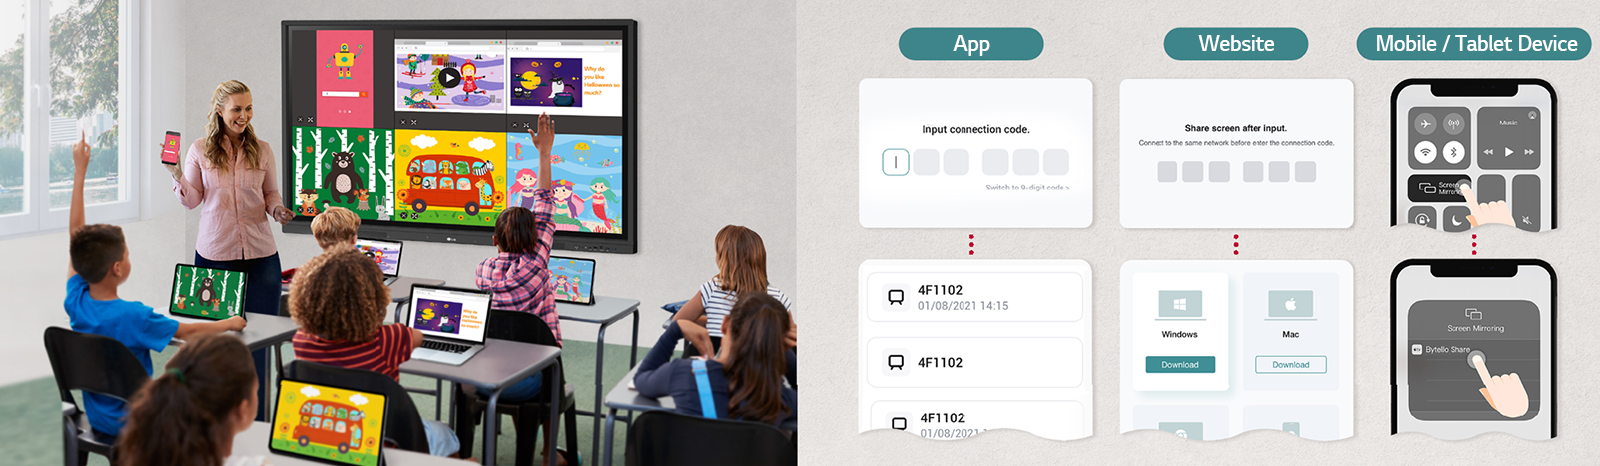 O LG CreateBoard pode compartilhar telas facilmente com vários dispositivos em tempo real por meio de aplicativo e site.